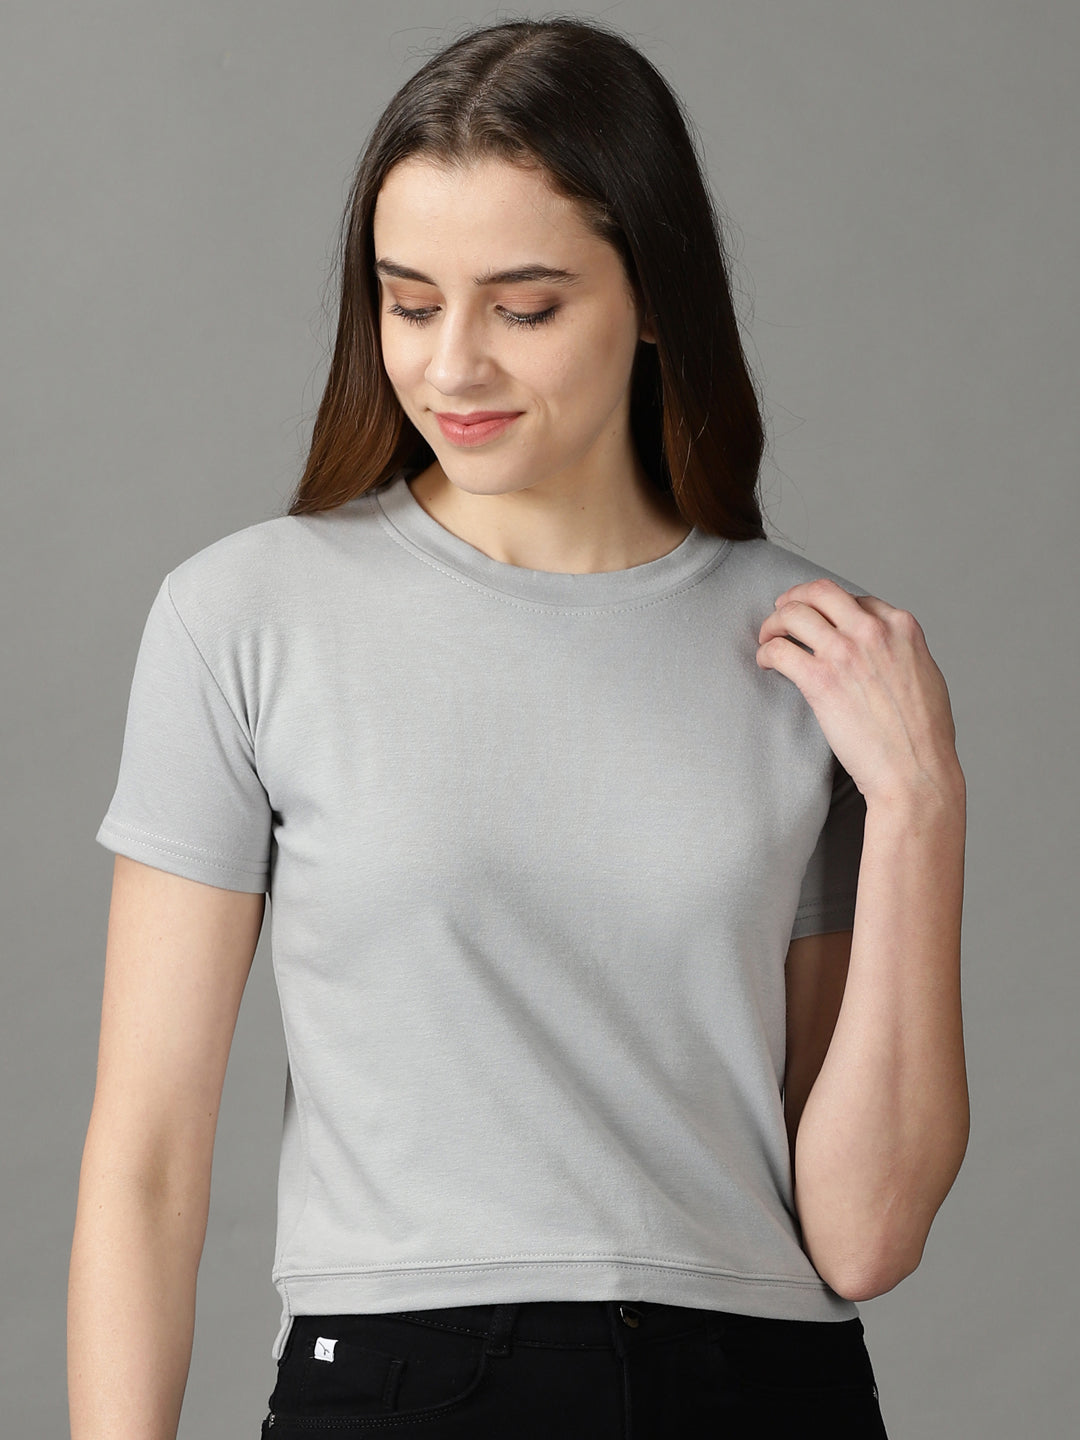 Women's Grey Solid Top